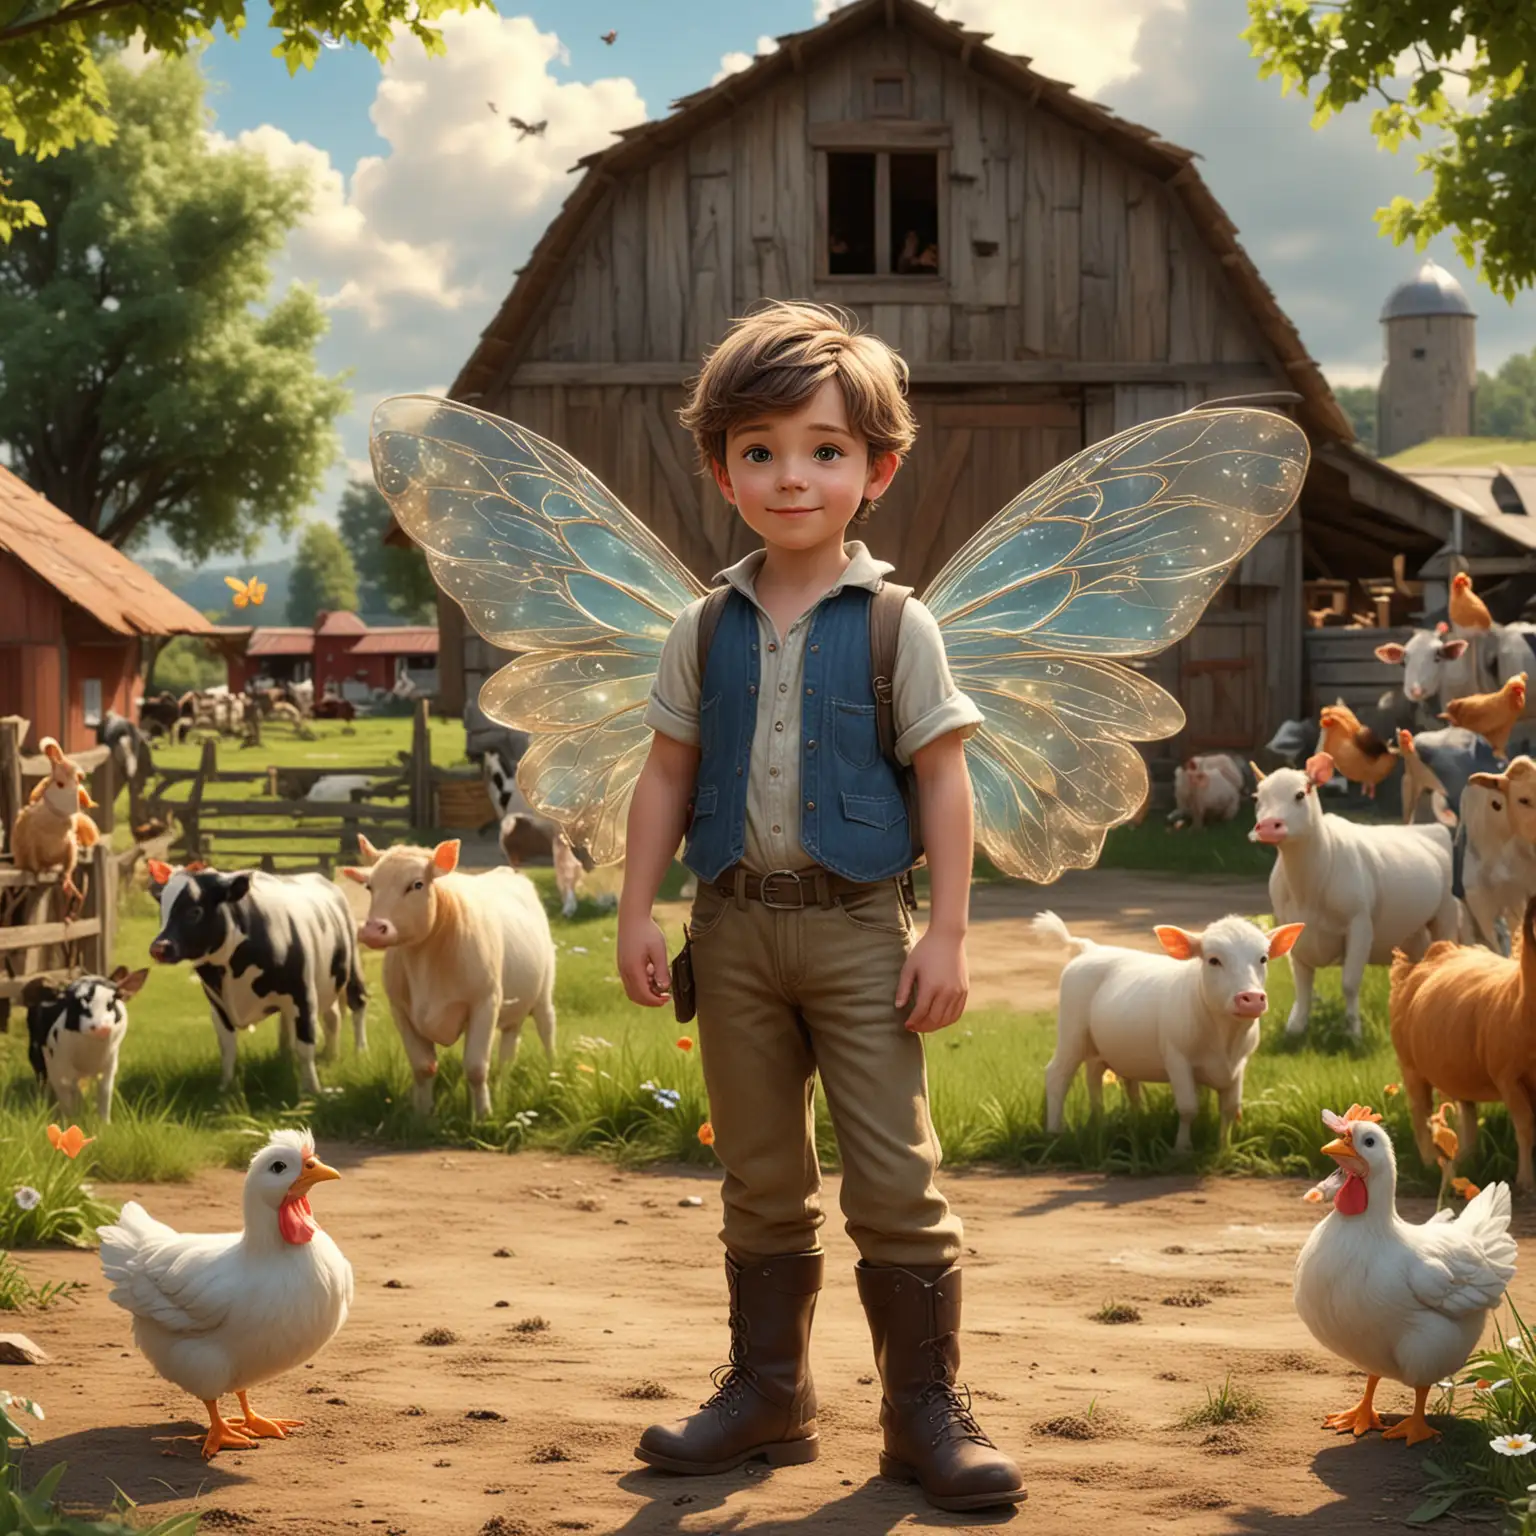 Charming Disneystyle Fairy Boy Amidst Farm Animals and Barn